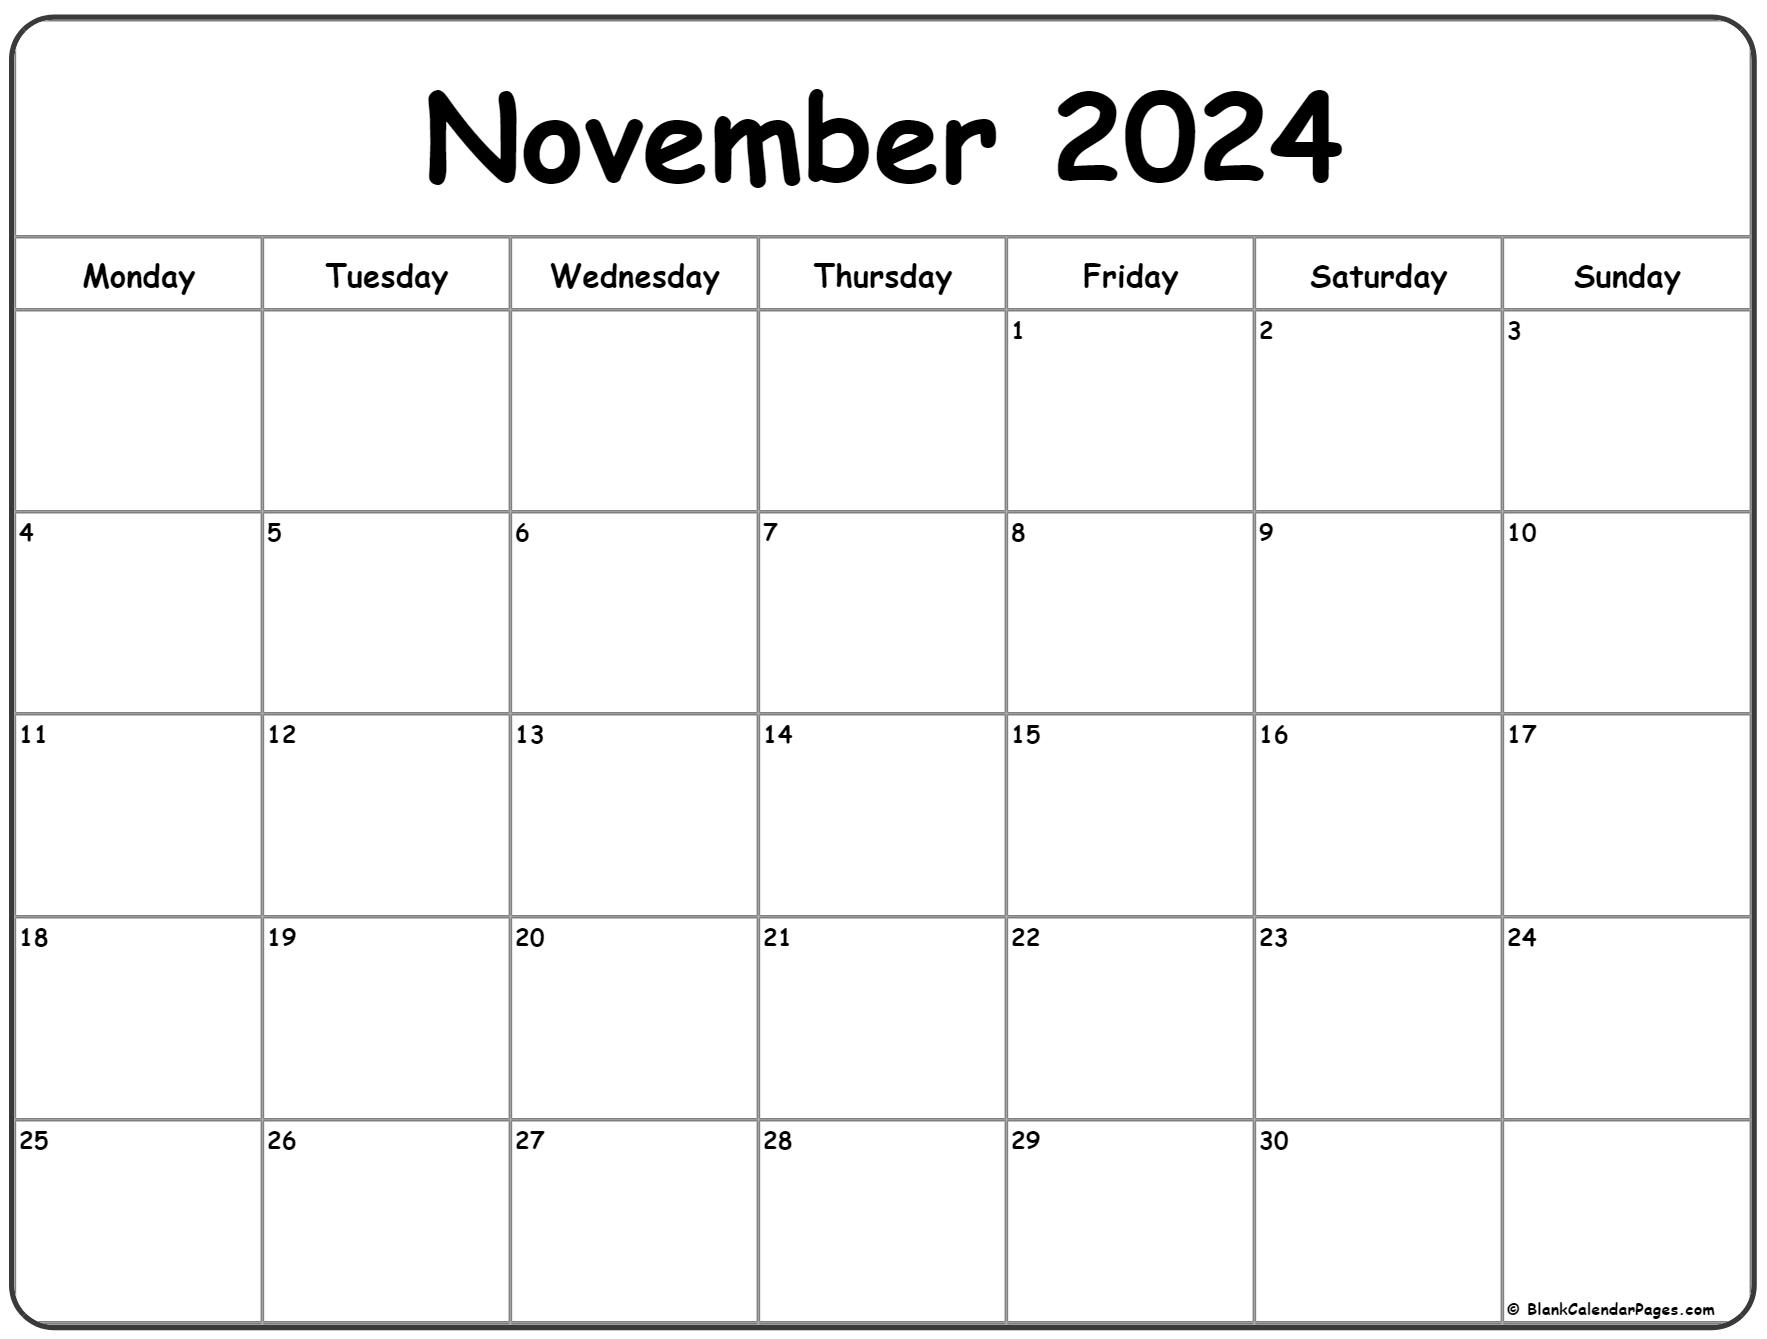 November 2024 Monday Calendar | Monday To Sunday for November 2024 Calendar Printable